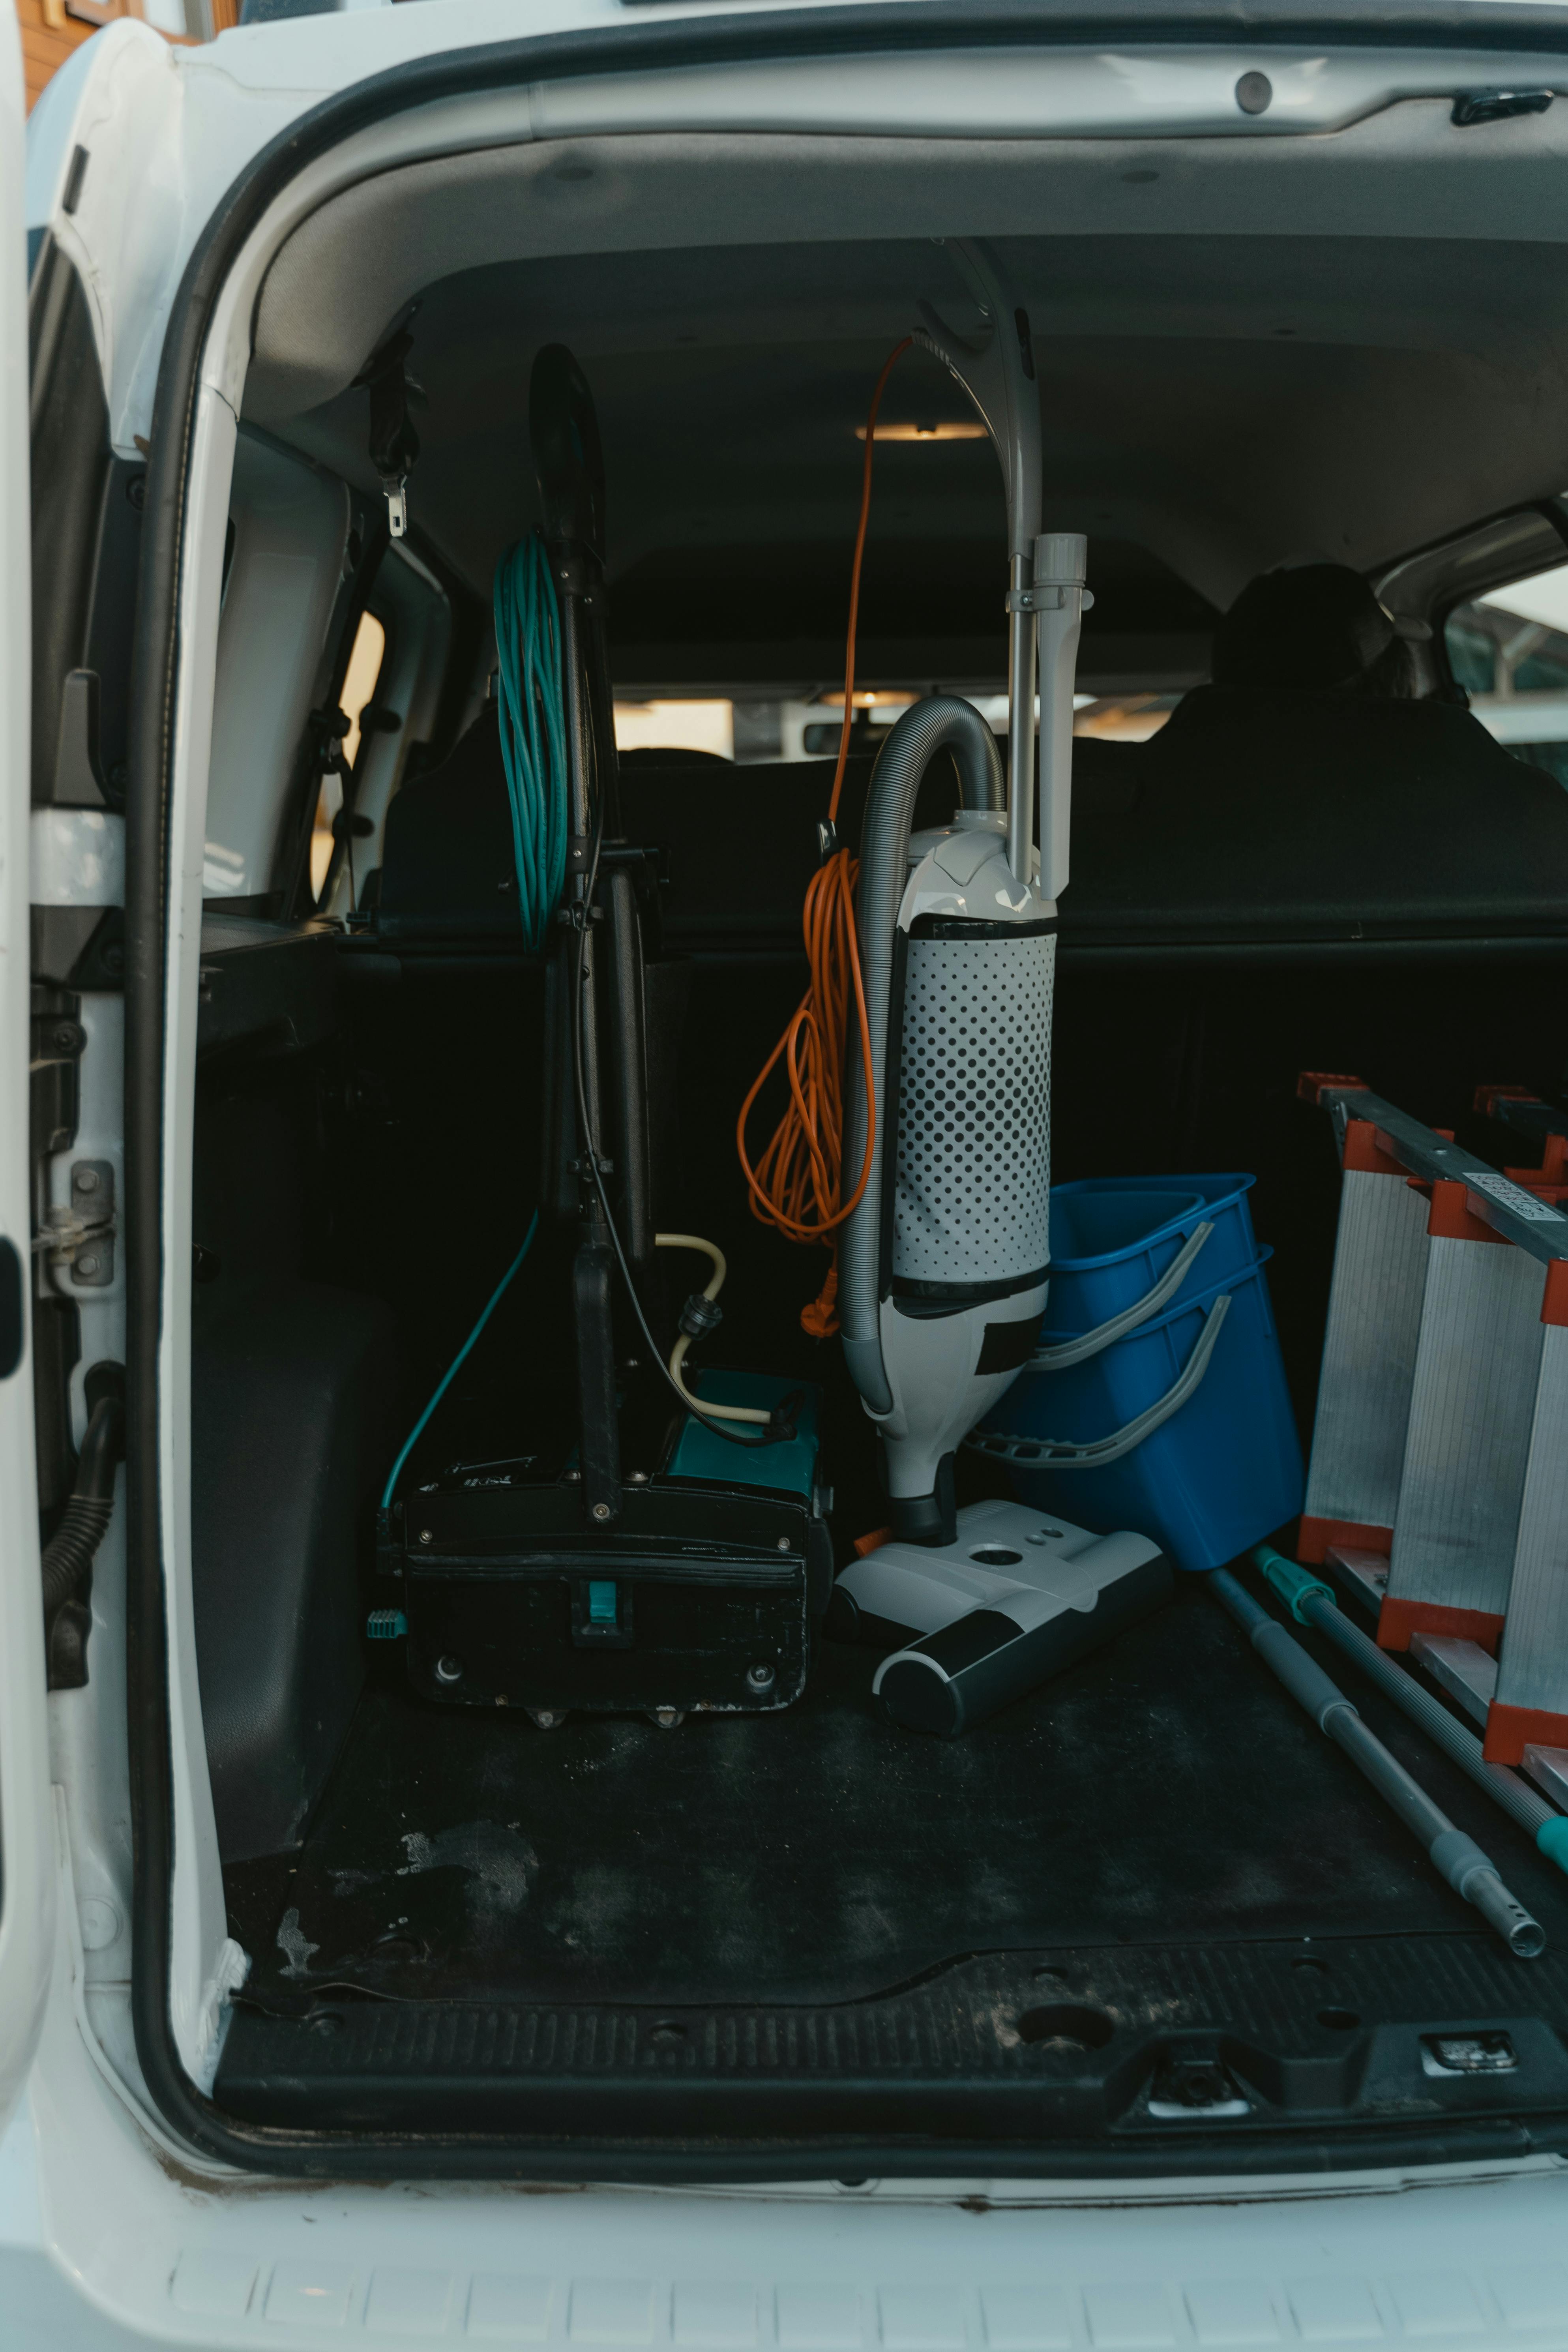 housekeeping equipments inside a service van